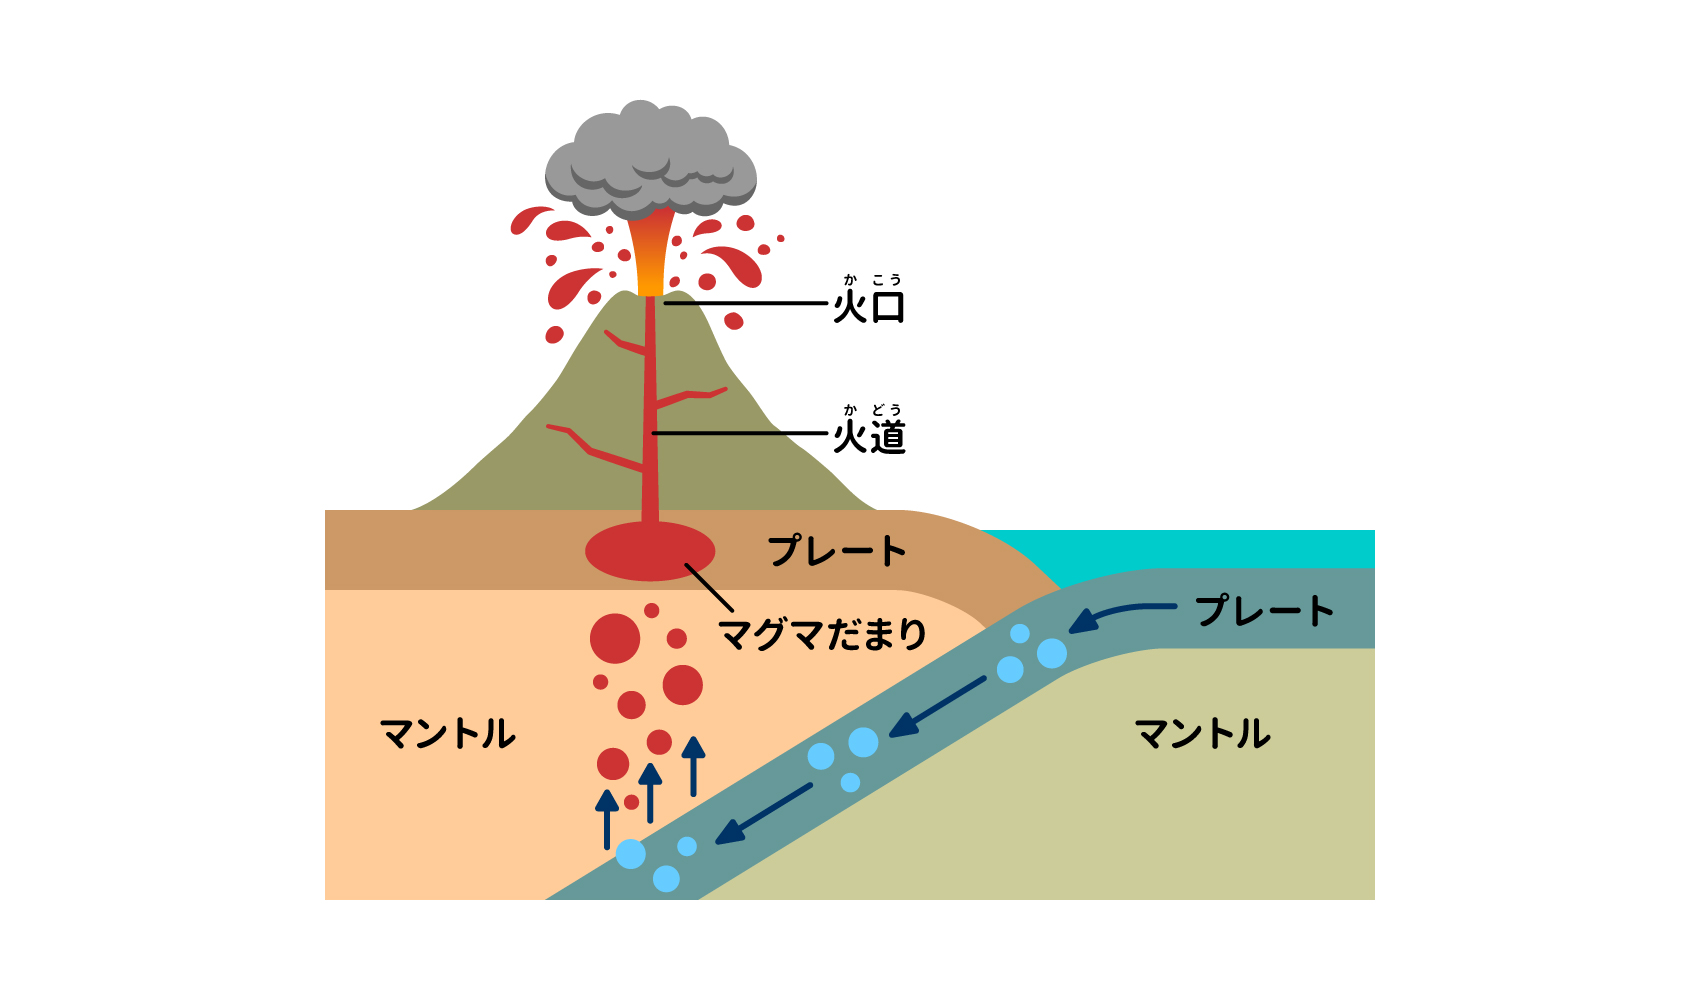 火山はどんなしくみで噴火するの 自然 科学なぜなぜ110番 科学 学研キッズネット